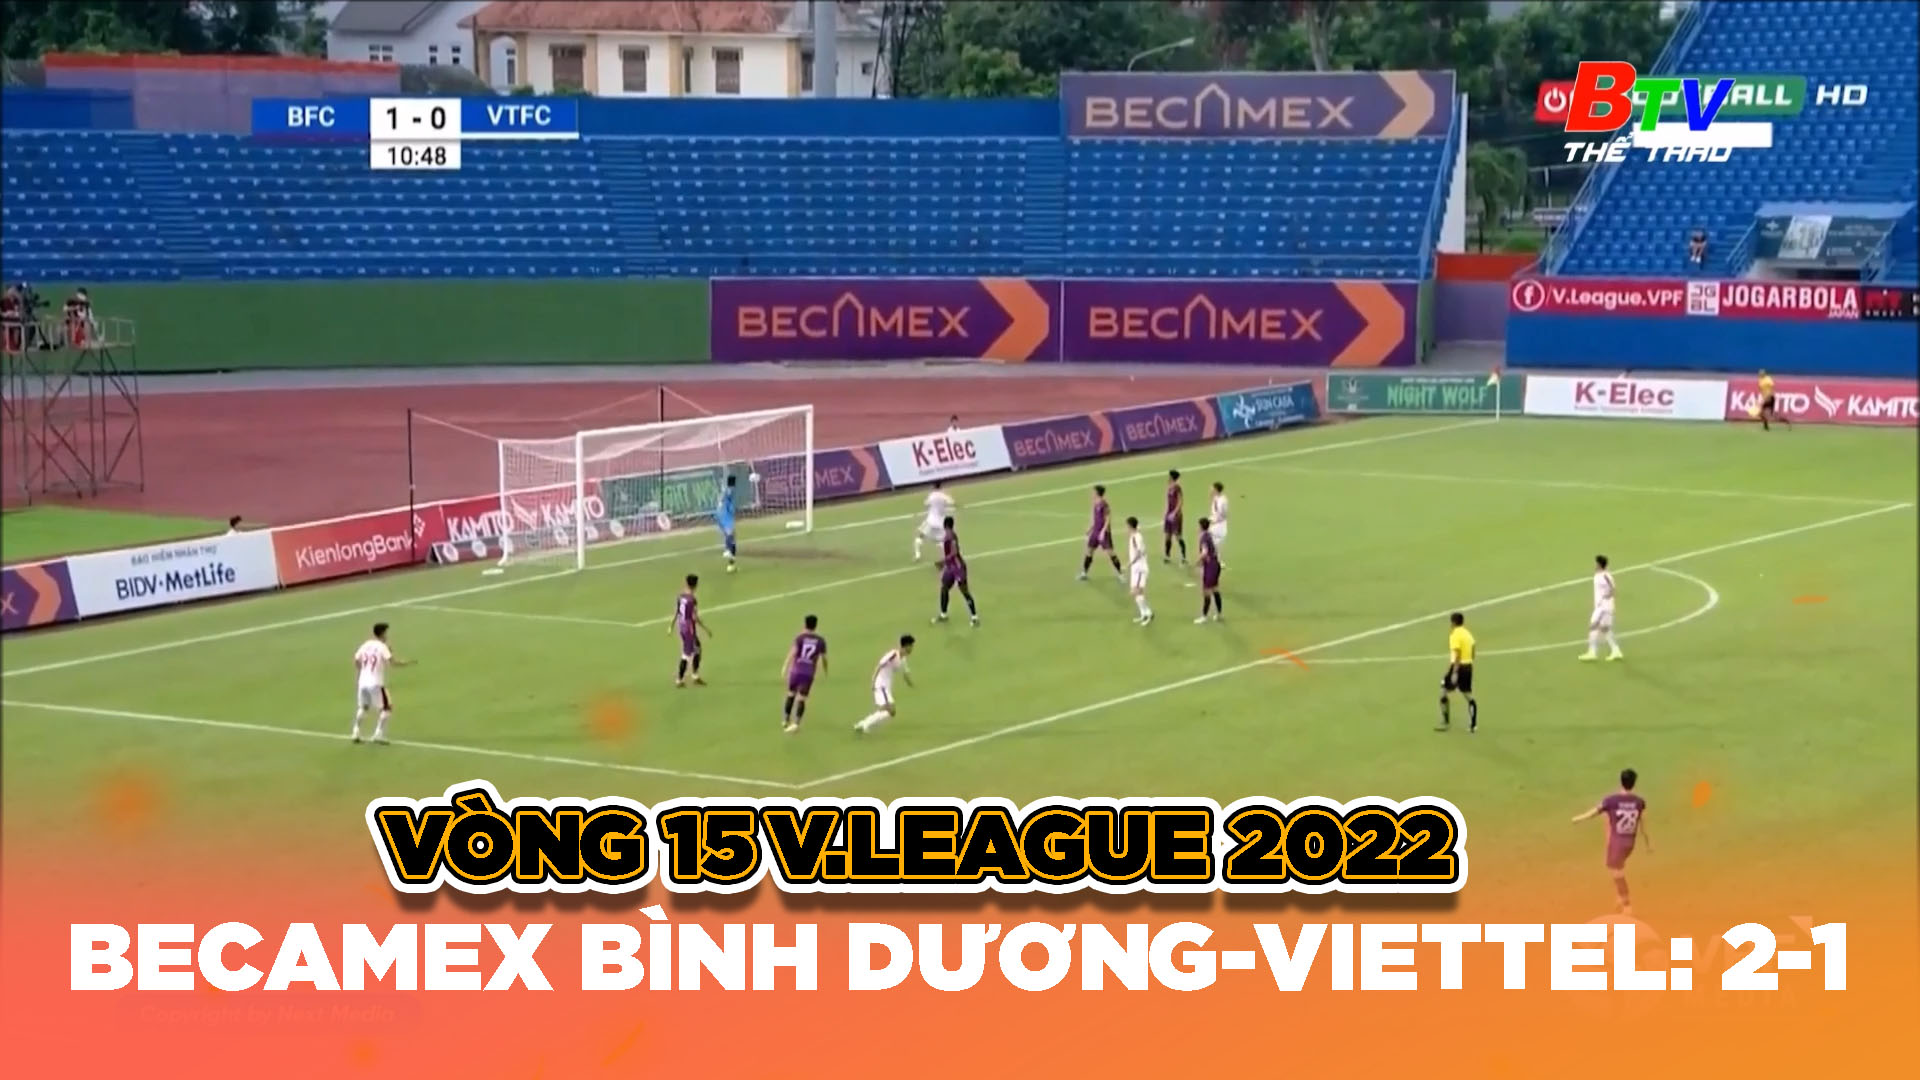 Vòng 15 V.League 2022 – Becamex Bình Dương – Viettel: 2-1